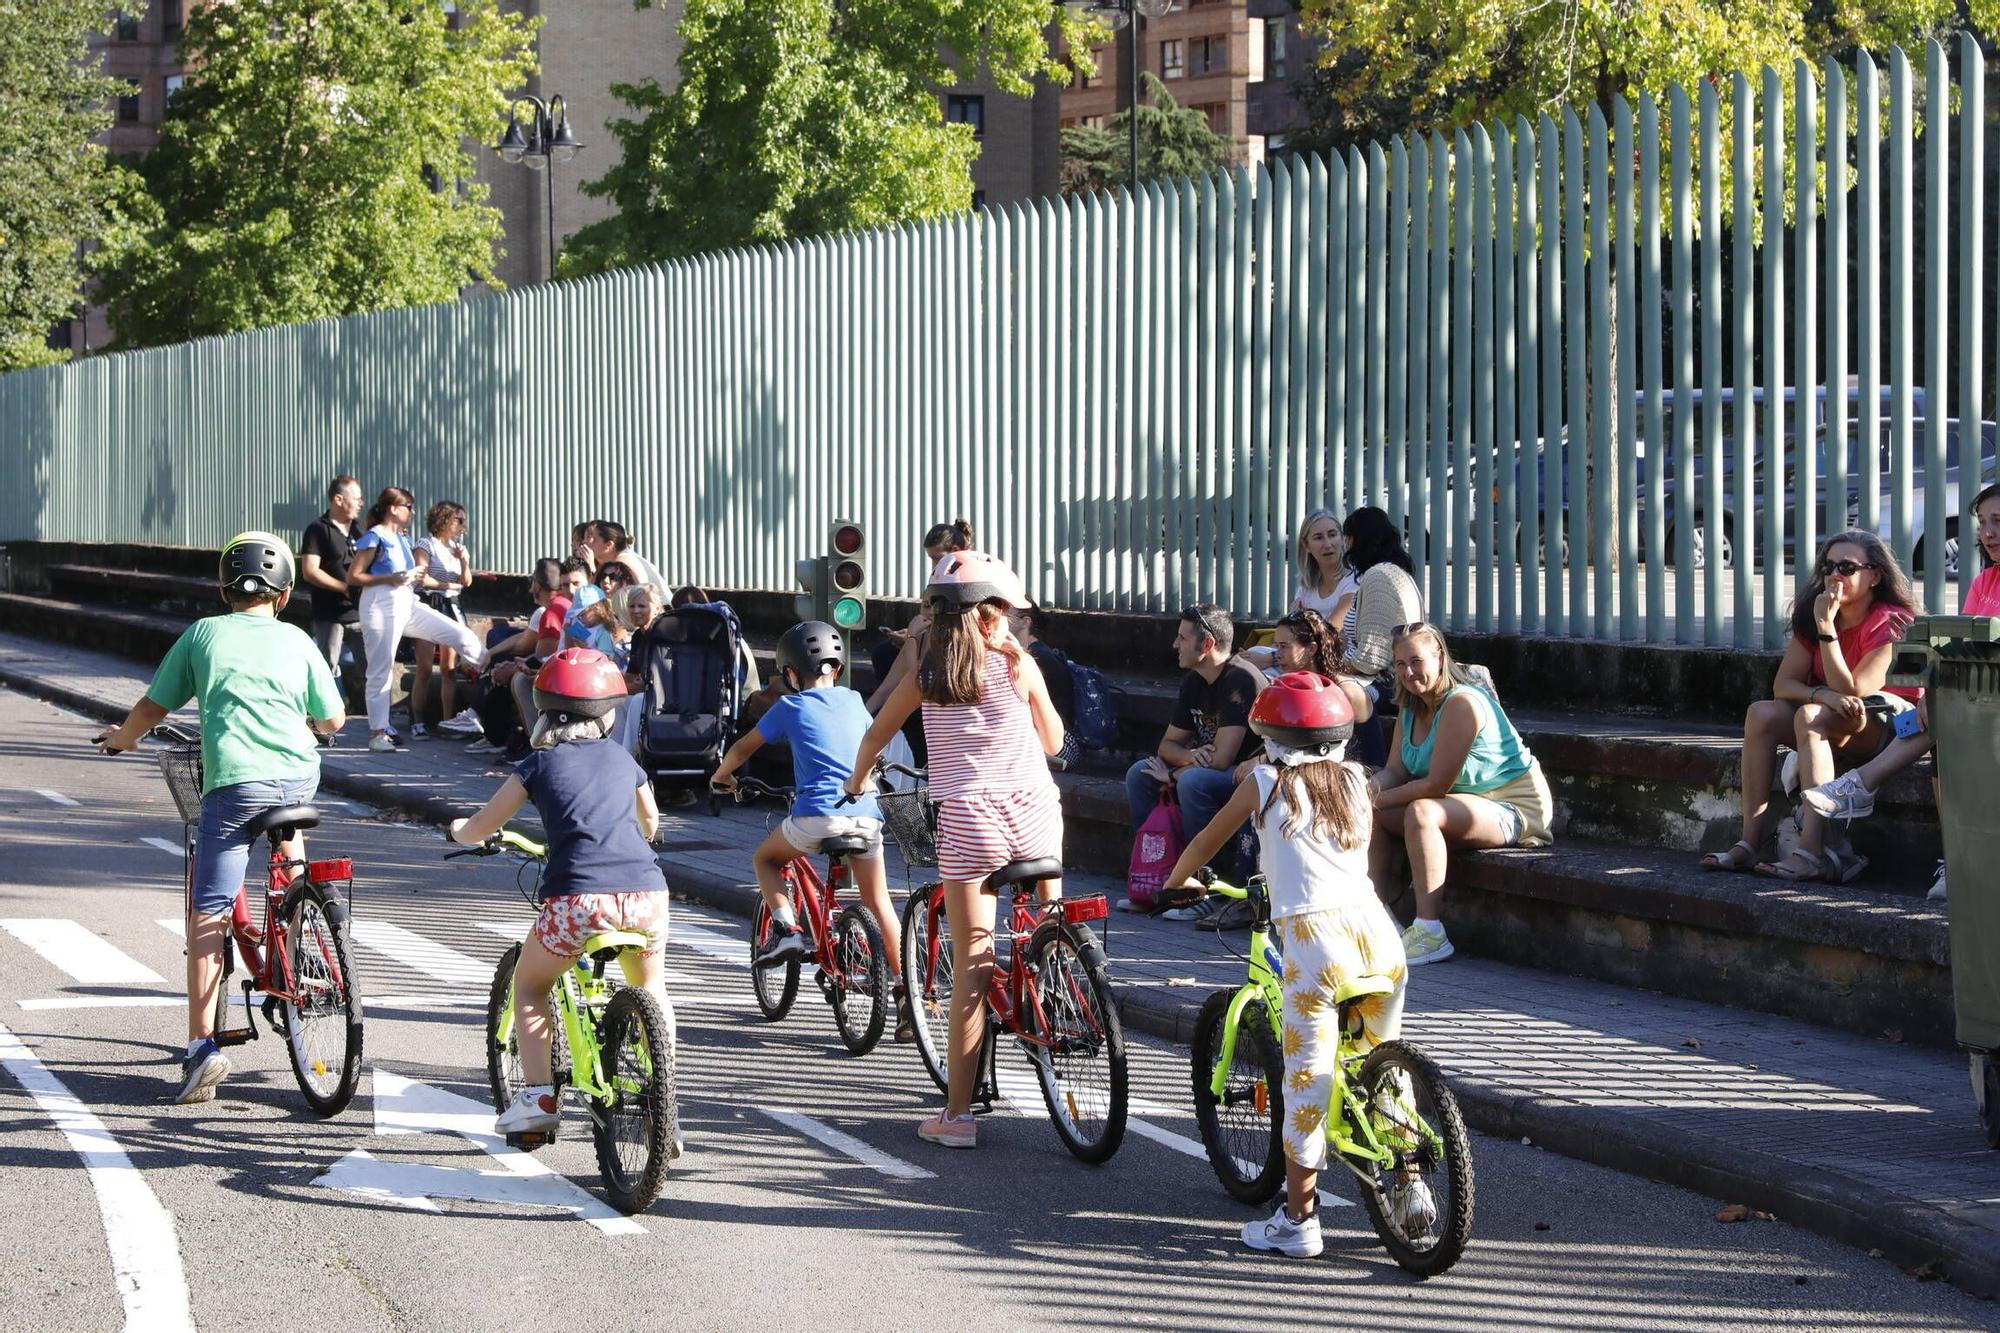 En imágenes: Los más pequeños aprenden educación vial en el Parque Infantil de Tráfico de Gijón